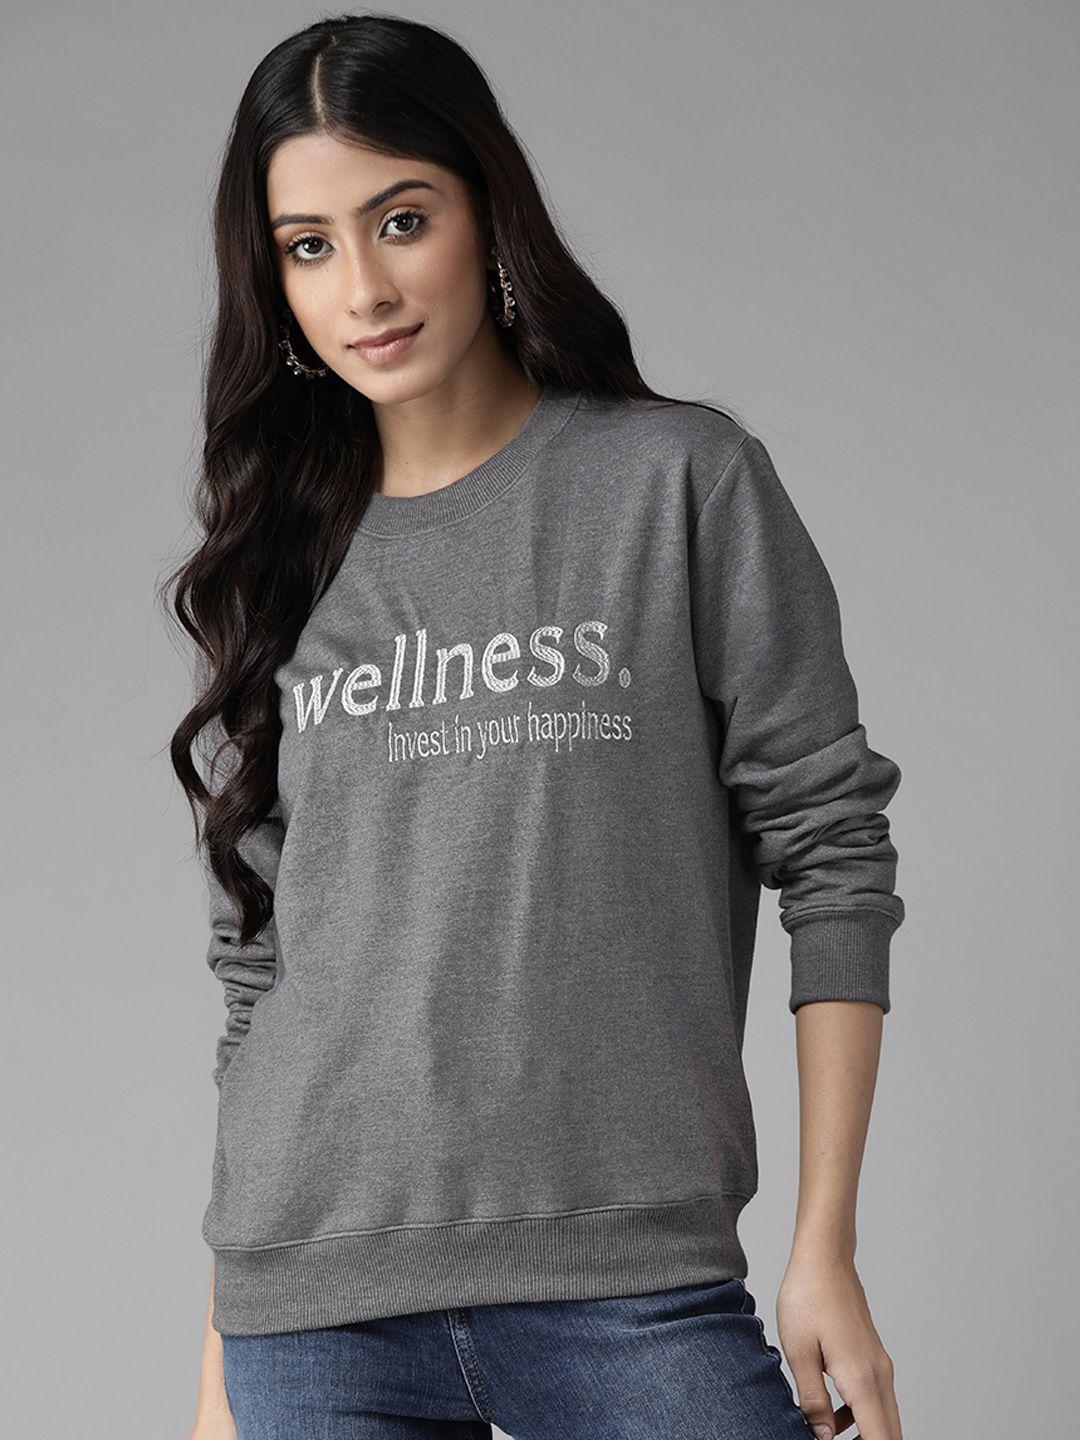 kassually women charcoal grey typography embroidered sweatshirt